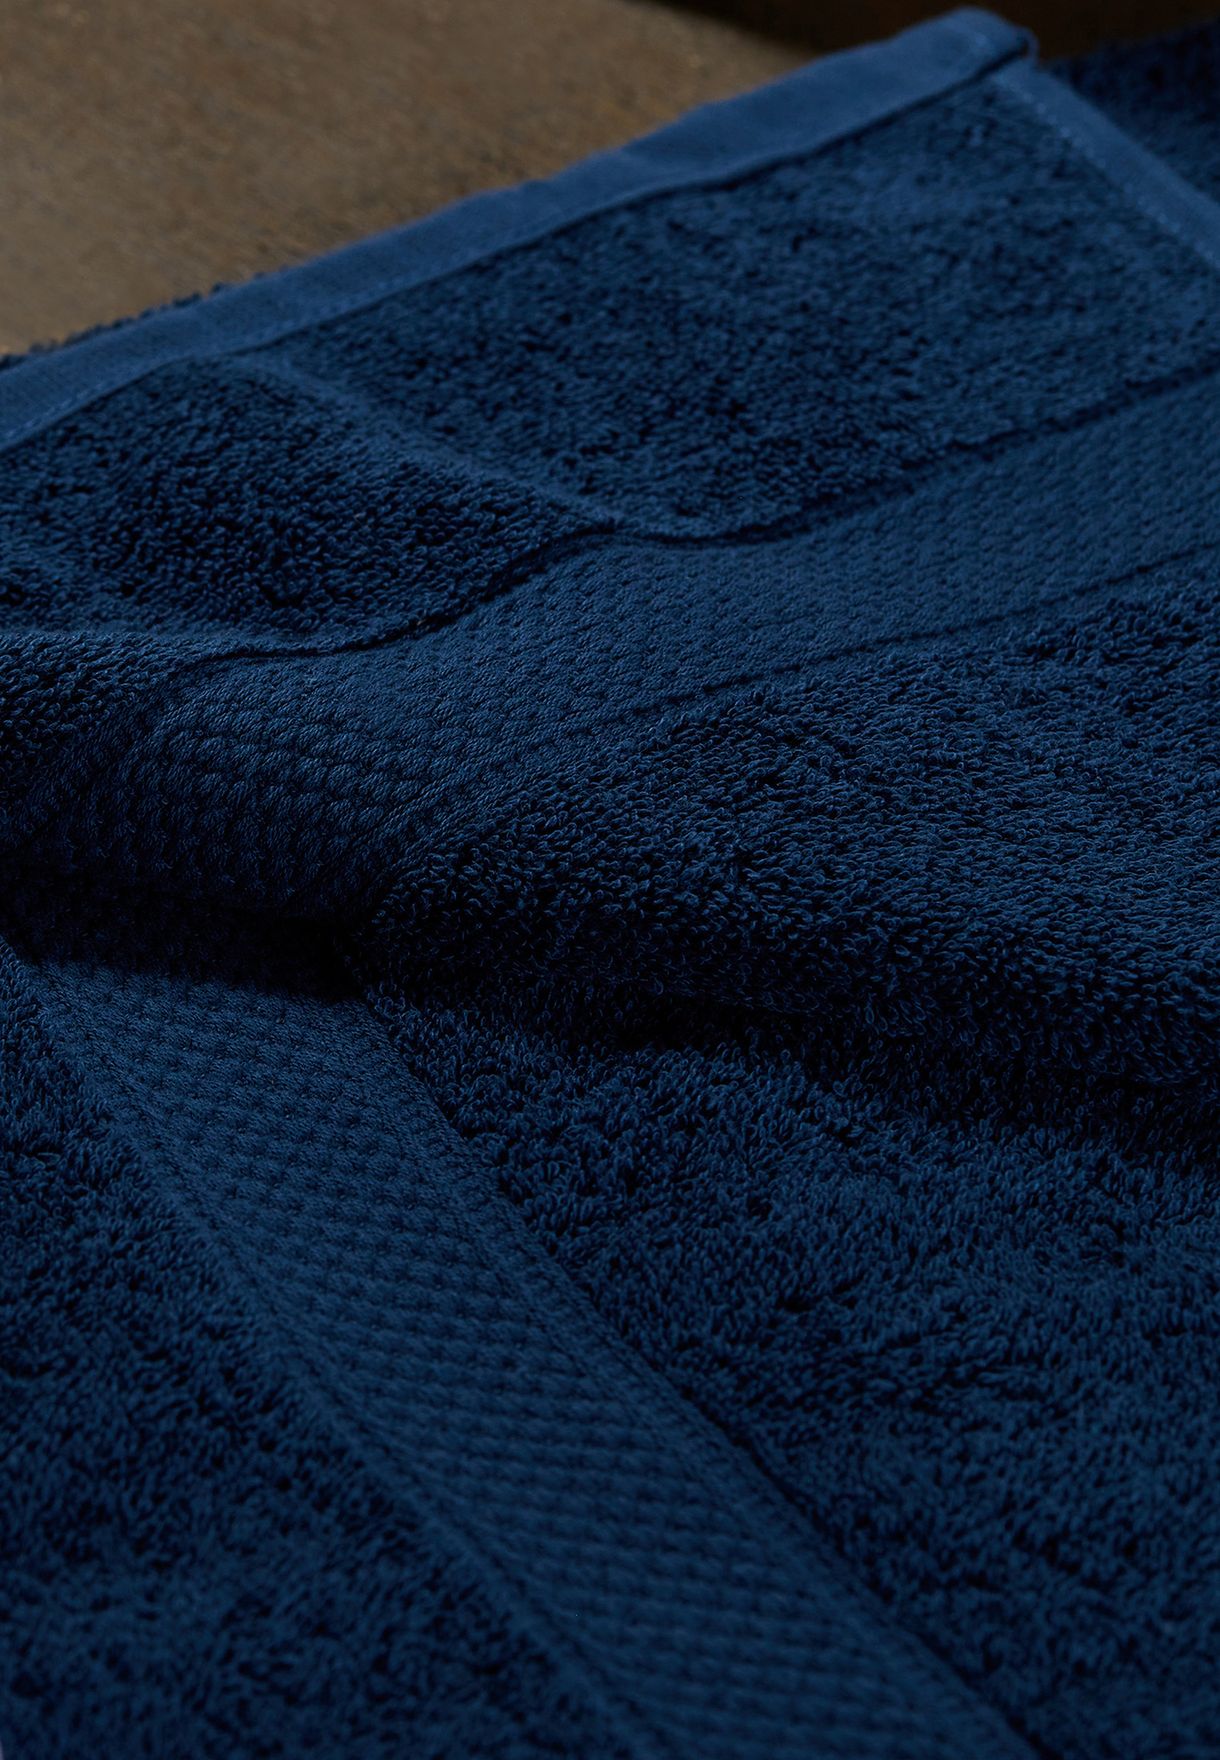 Jeans Blue Bath Towel 70X140